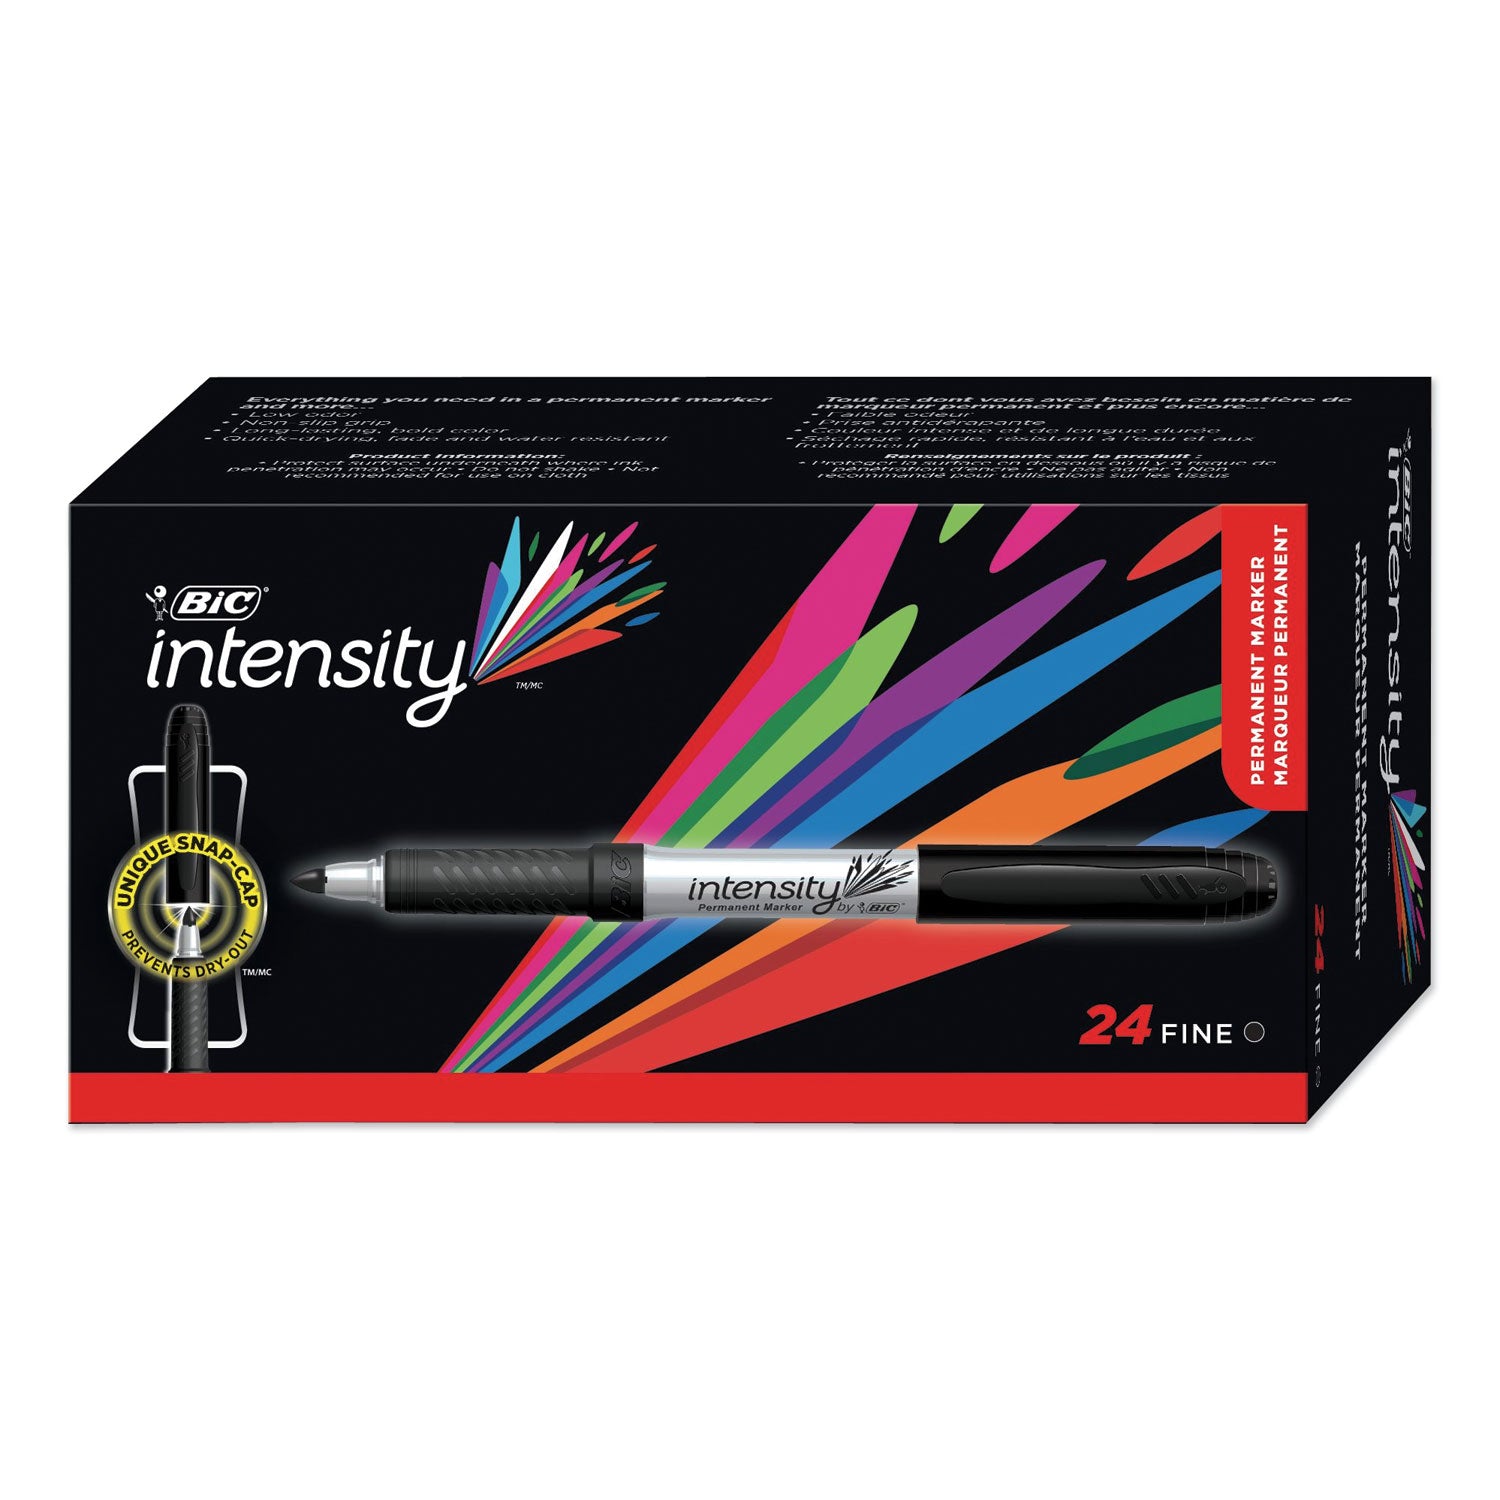 Intensity Fine Tip Permanent Marker Value Pack, Fine Bullet Tip, Black, 24/Pack - 